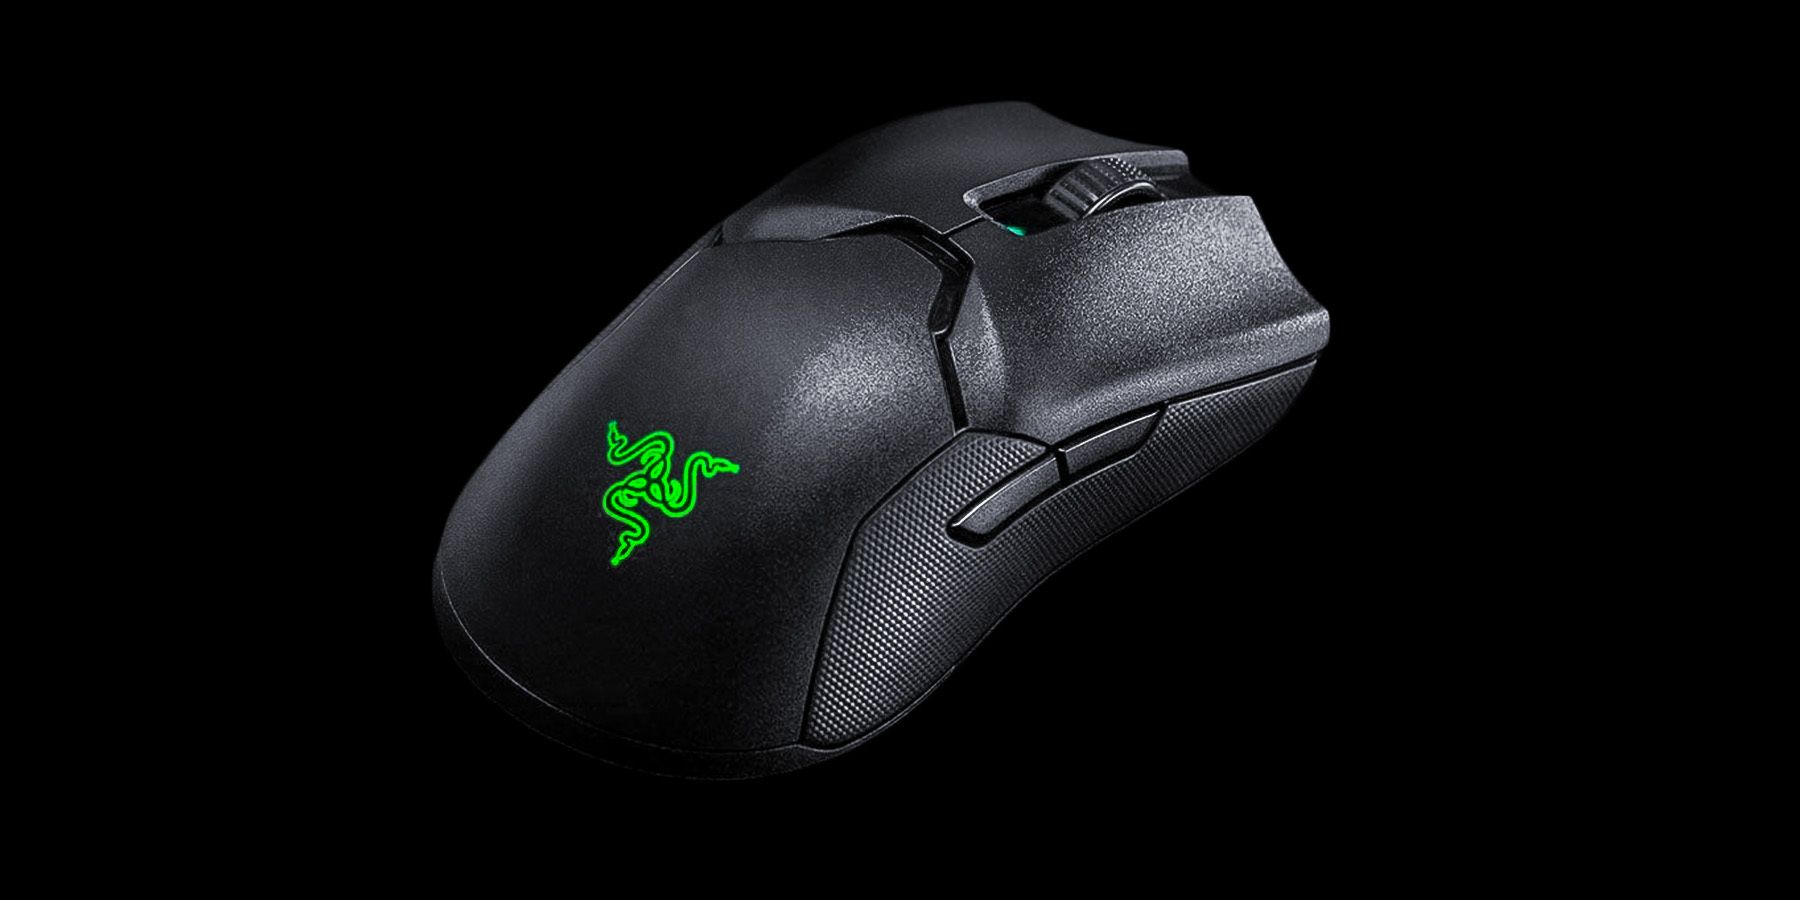 Razer Viper Ultimate Left Handed Mice 2 